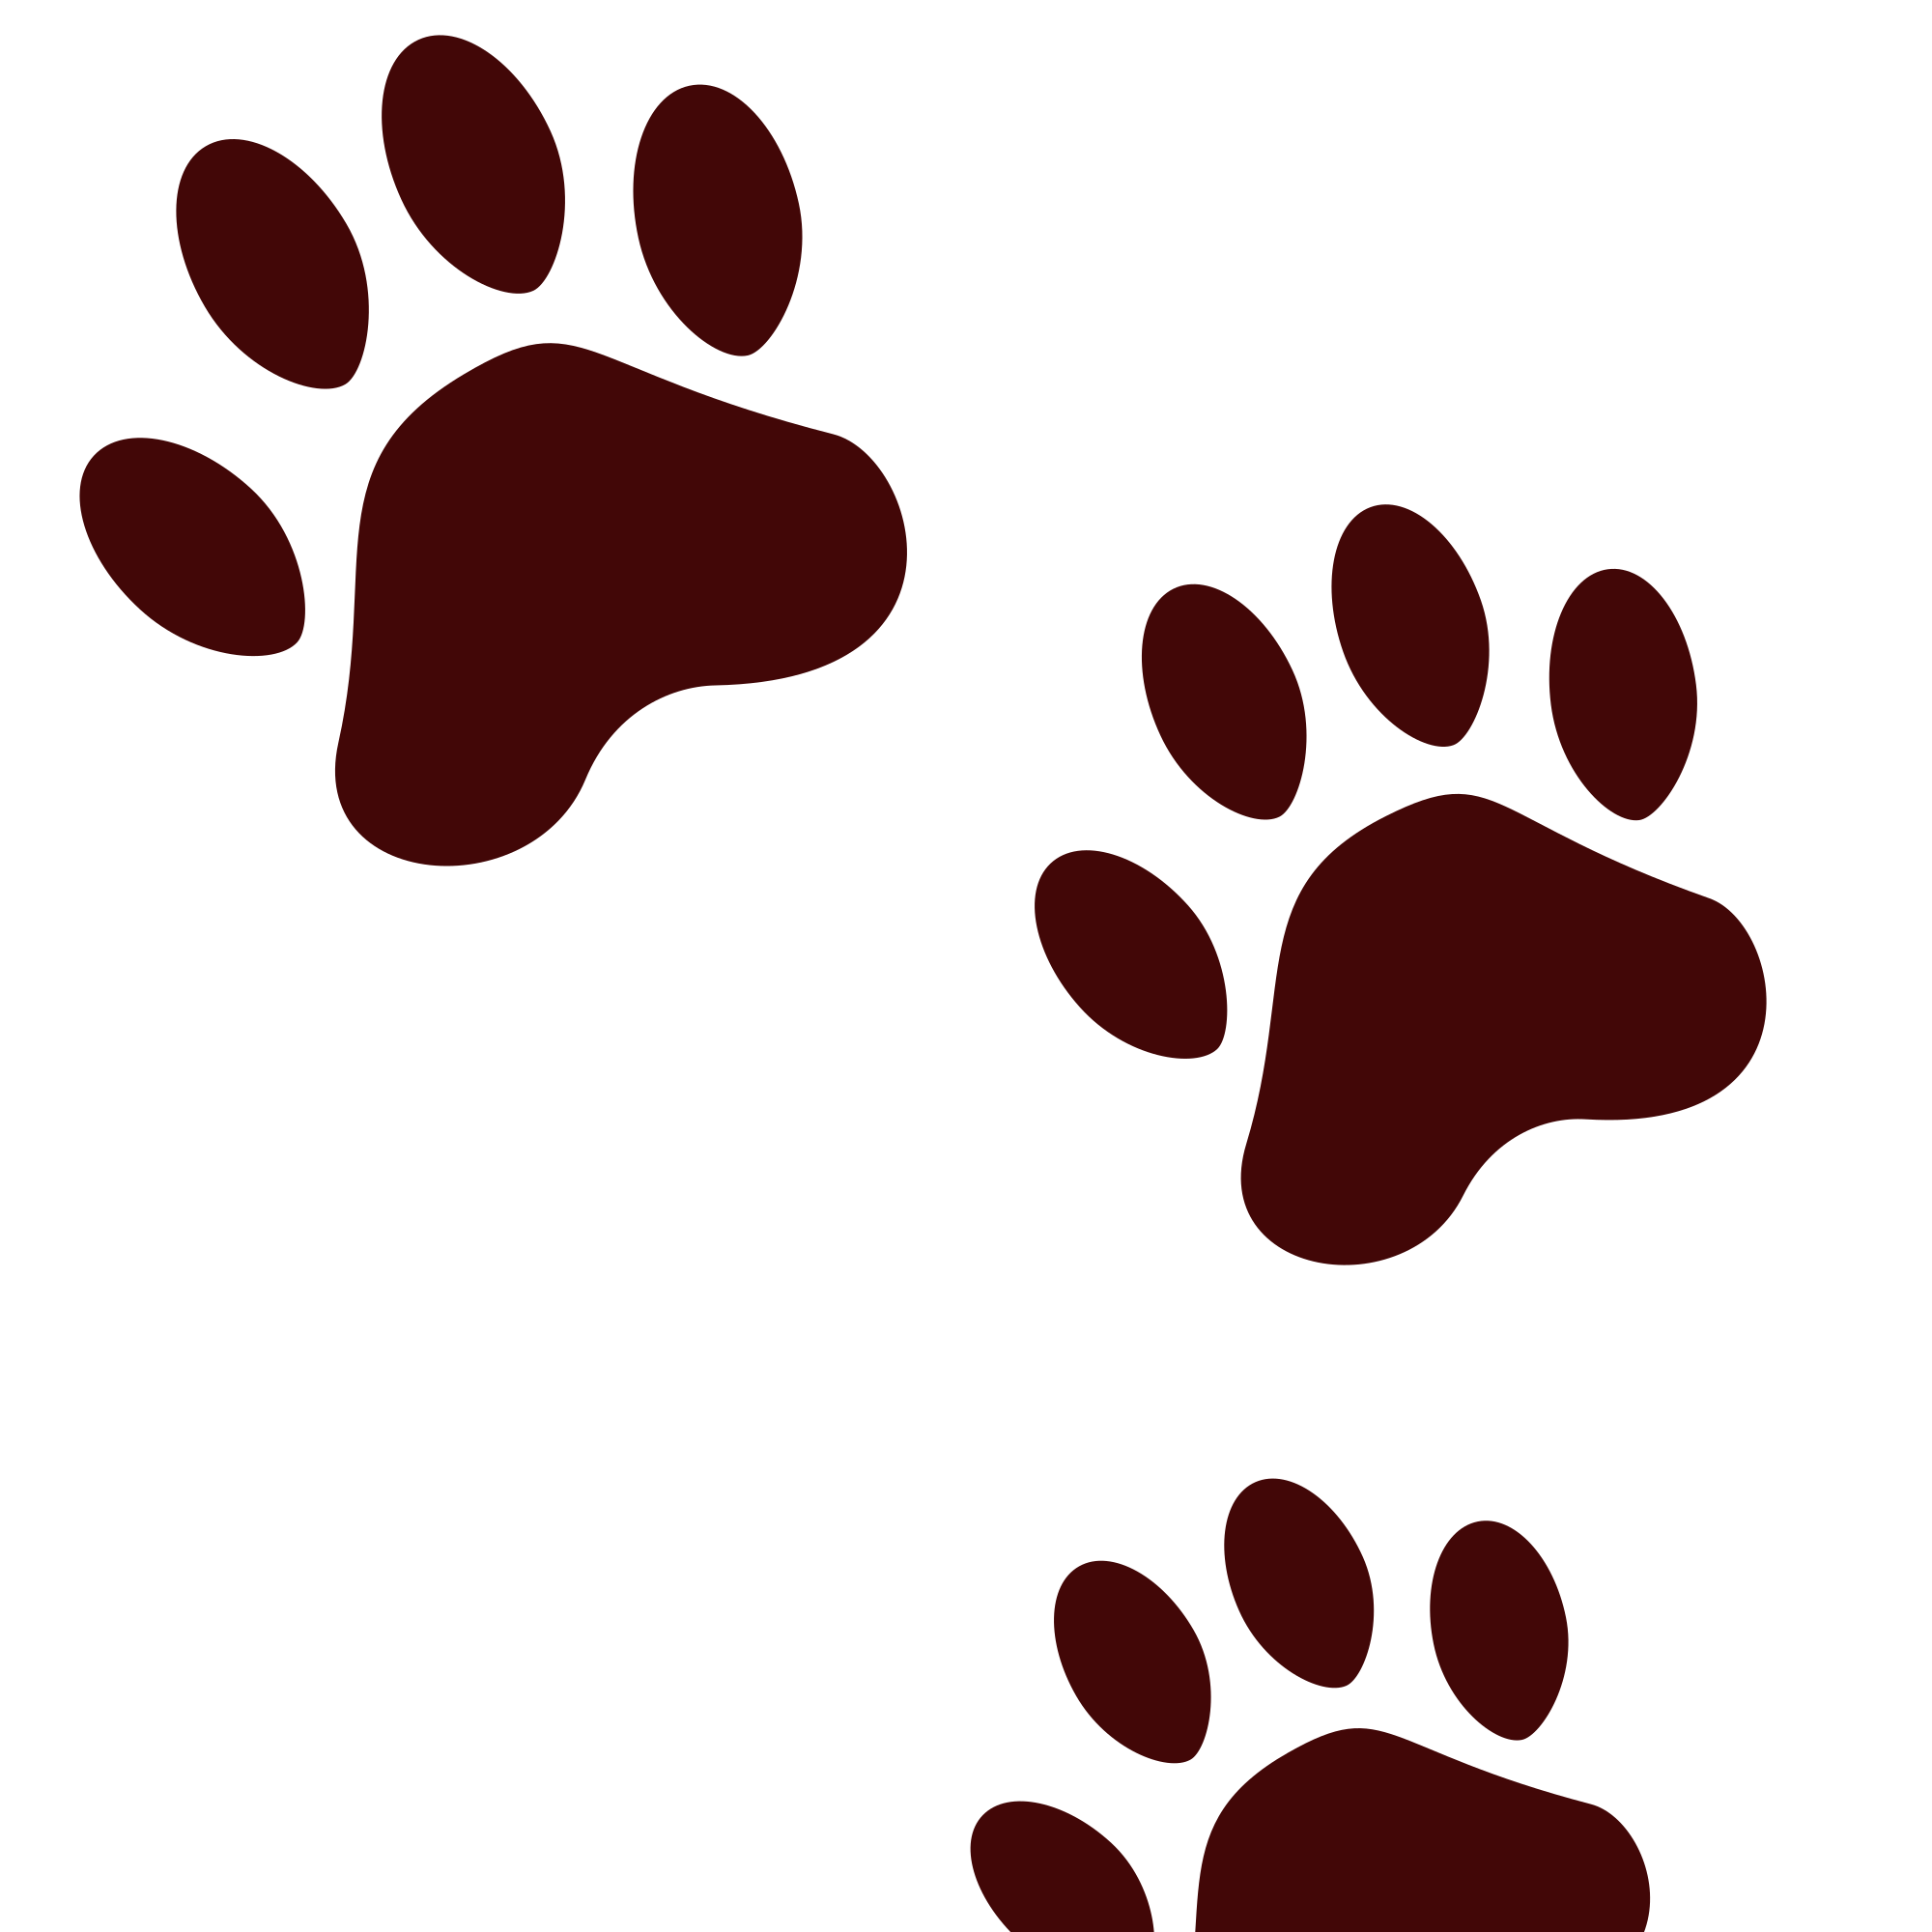 footprint clipart cheetah